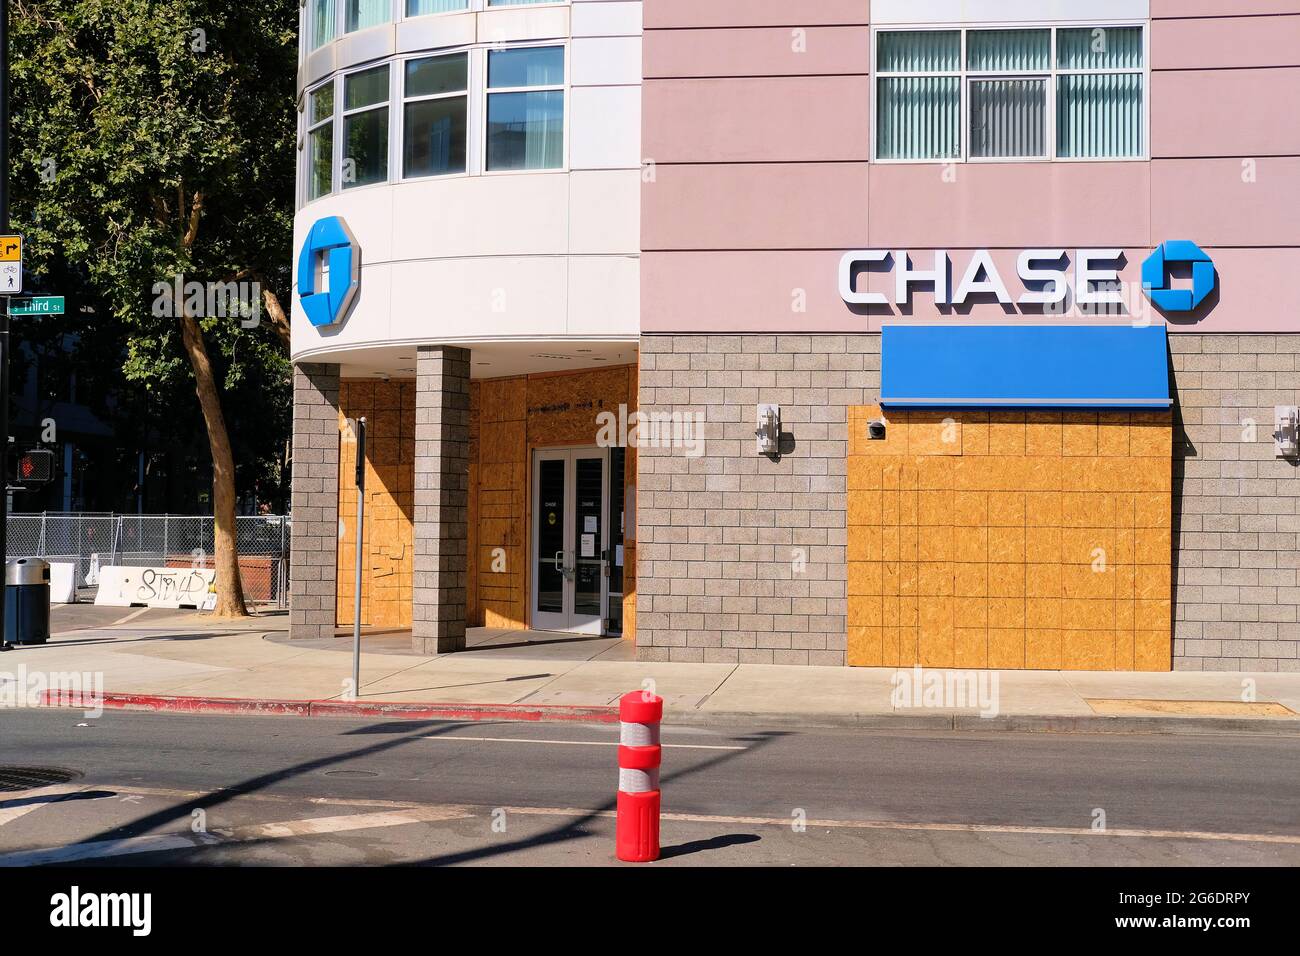 Vue extérieure d'une banque Chase à bord et temporairement fermée dans le centre-ville de San Jose, Californie ; peur des manifestants, des pillages et des troubles sociaux. Banque D'Images